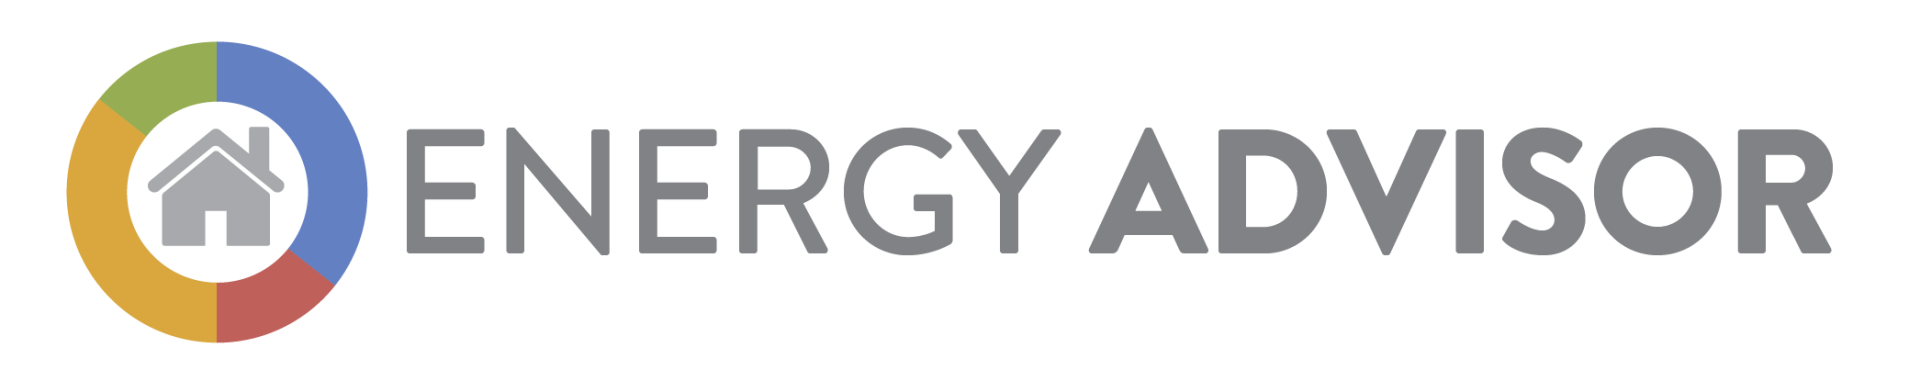 Energy Advisor logo link